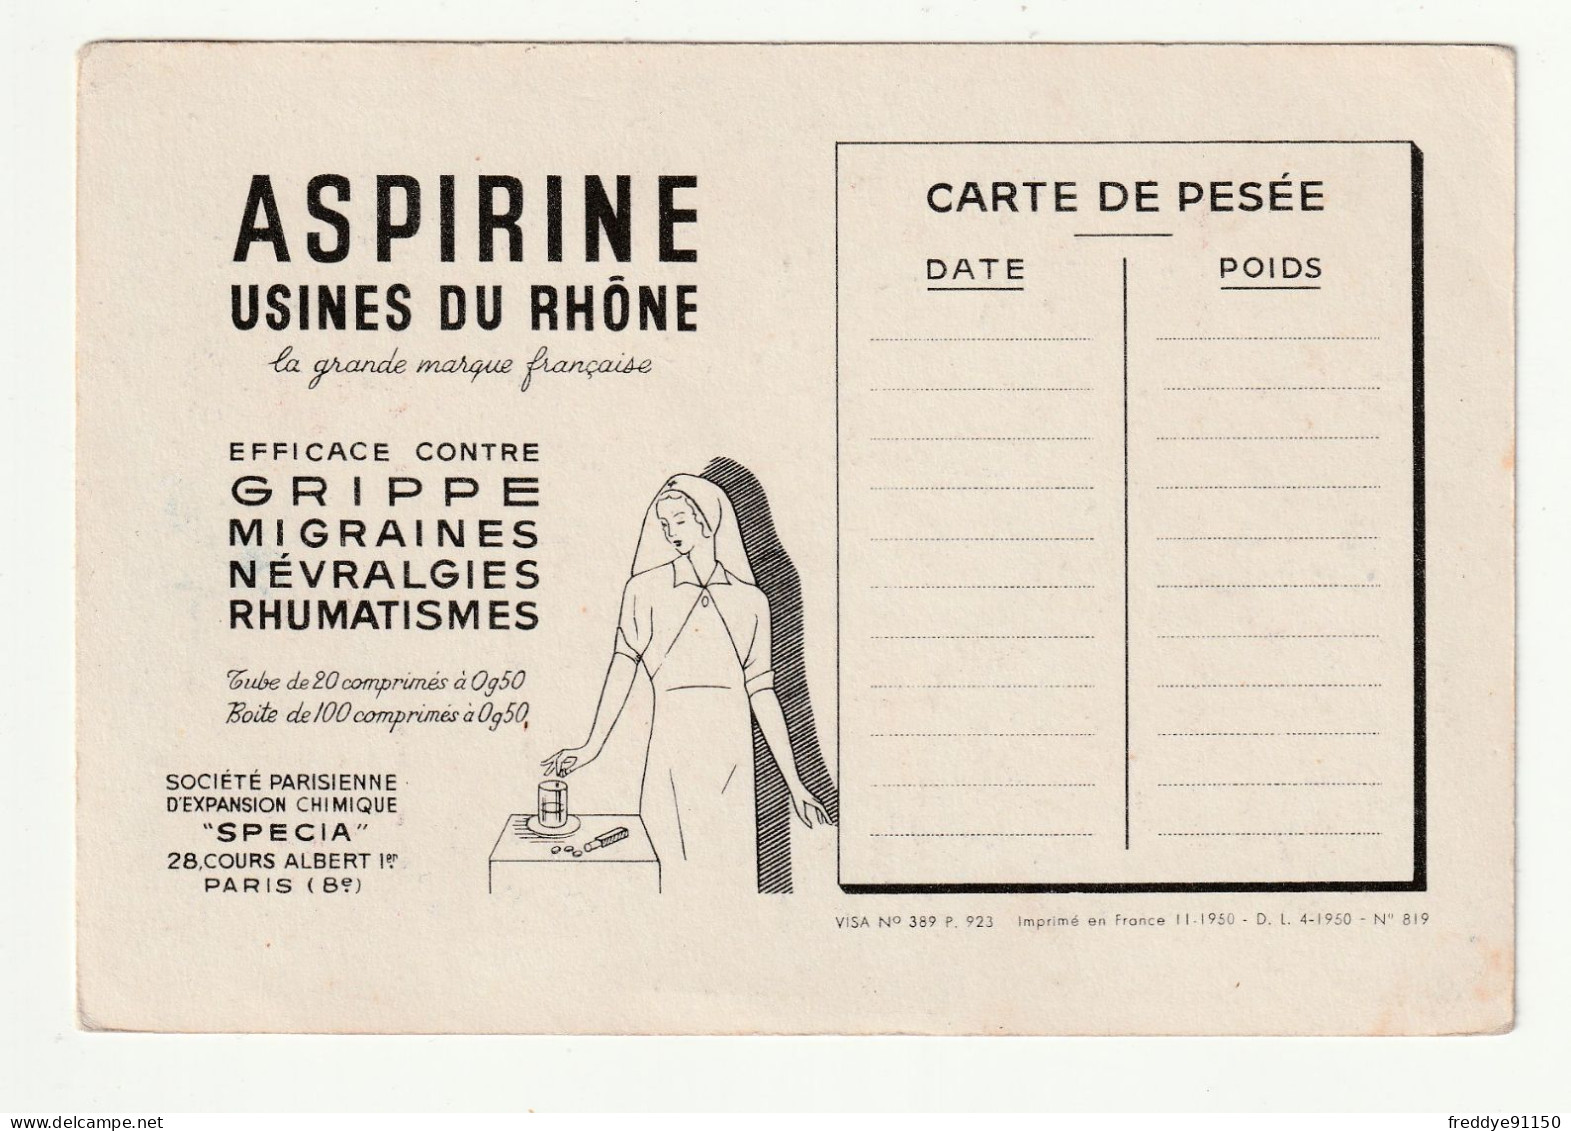 28 . Chartres . Publicite Aspirine  . Les Corporations D'apres Les Vitraux De La Cathedrale . Les Tailleurs De Pierre - Chartres